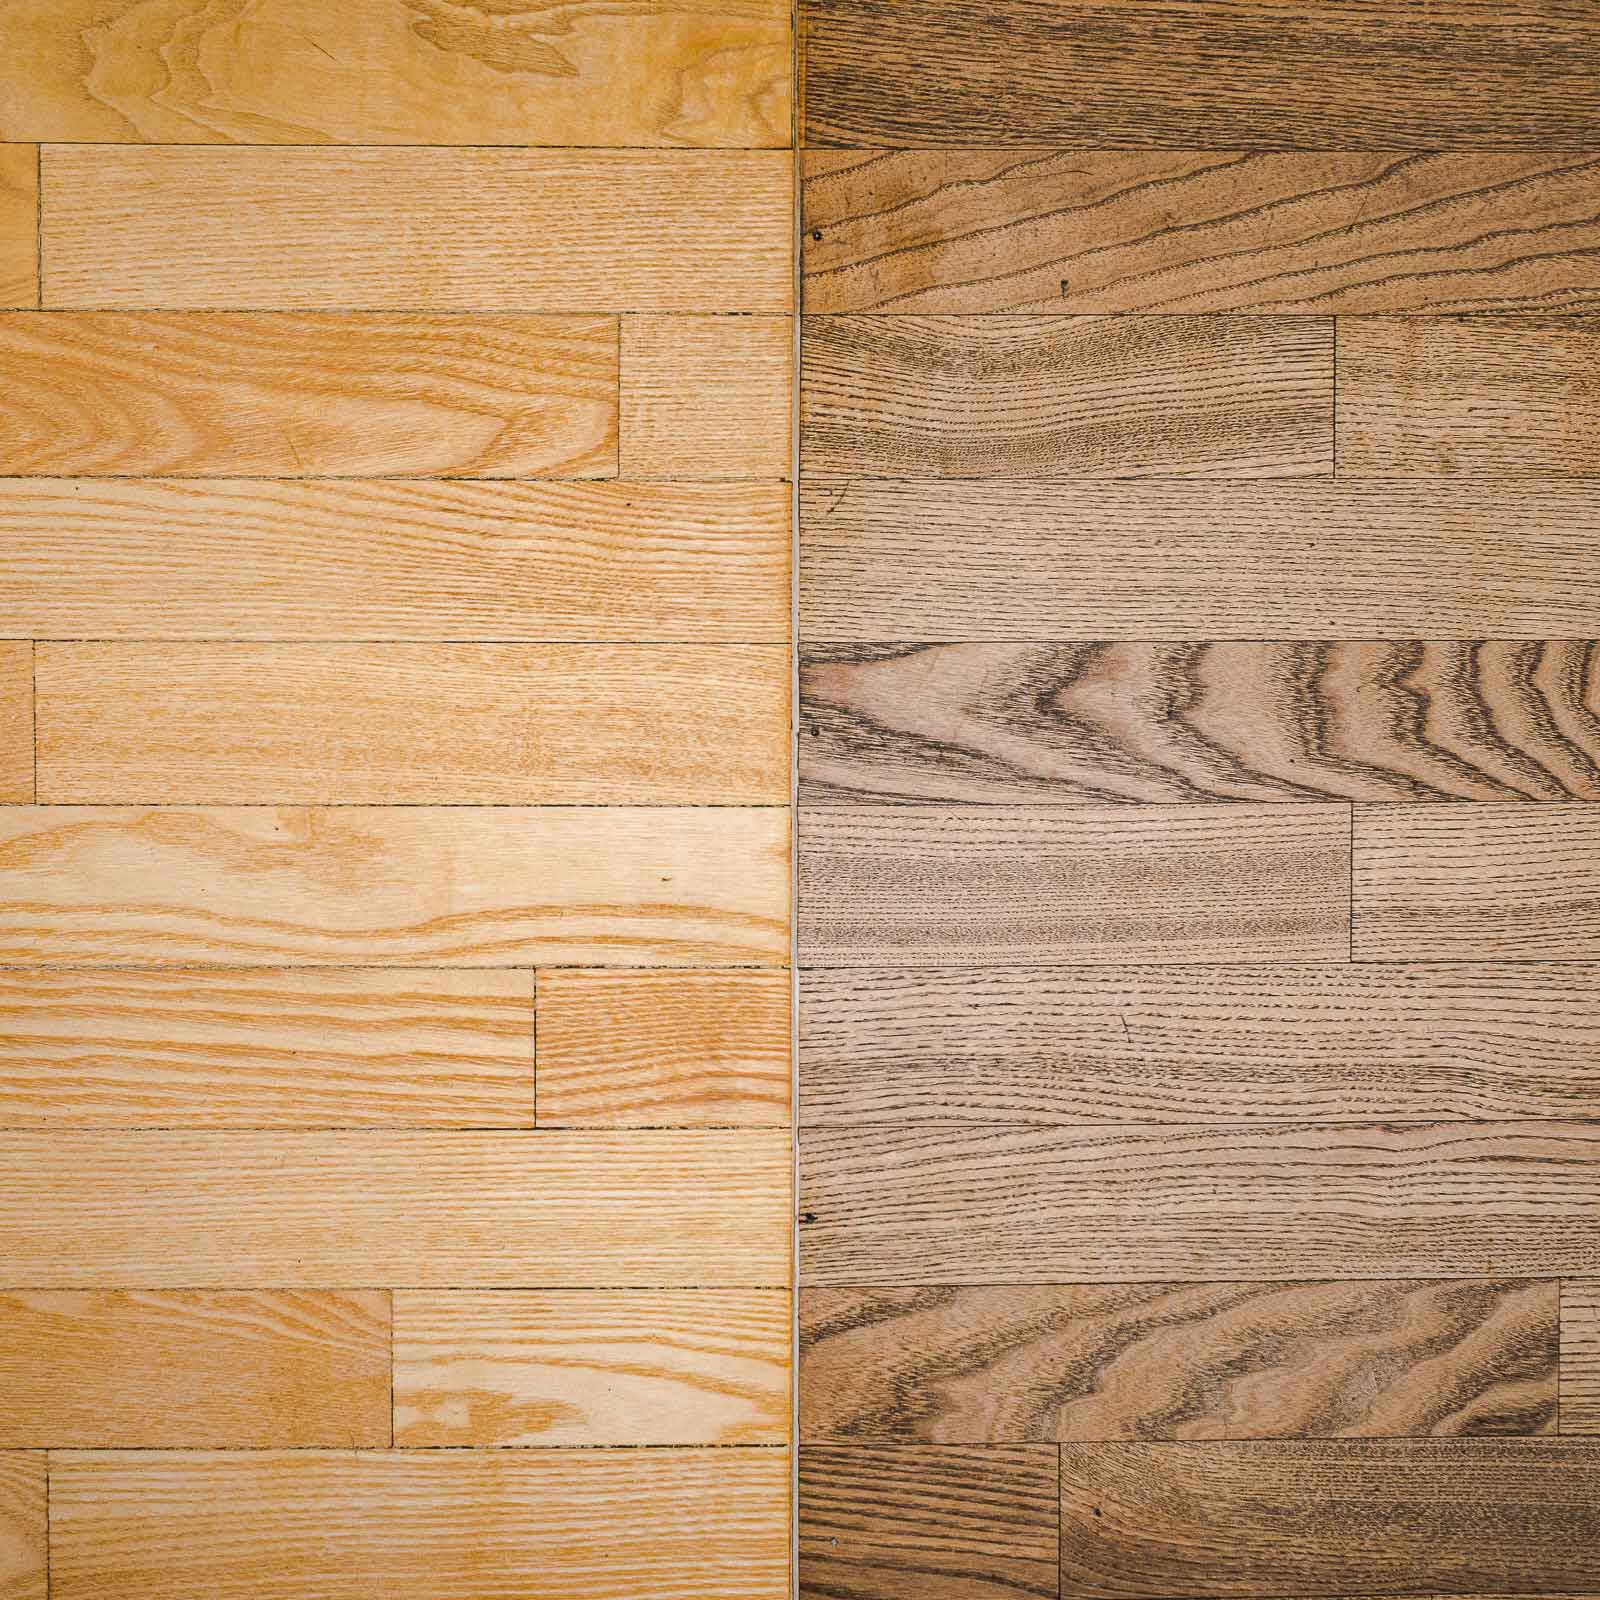 Bild zeigt Vorher/Nachher-Vergleich im mit neu verlegten Holzboden von ROBIA.